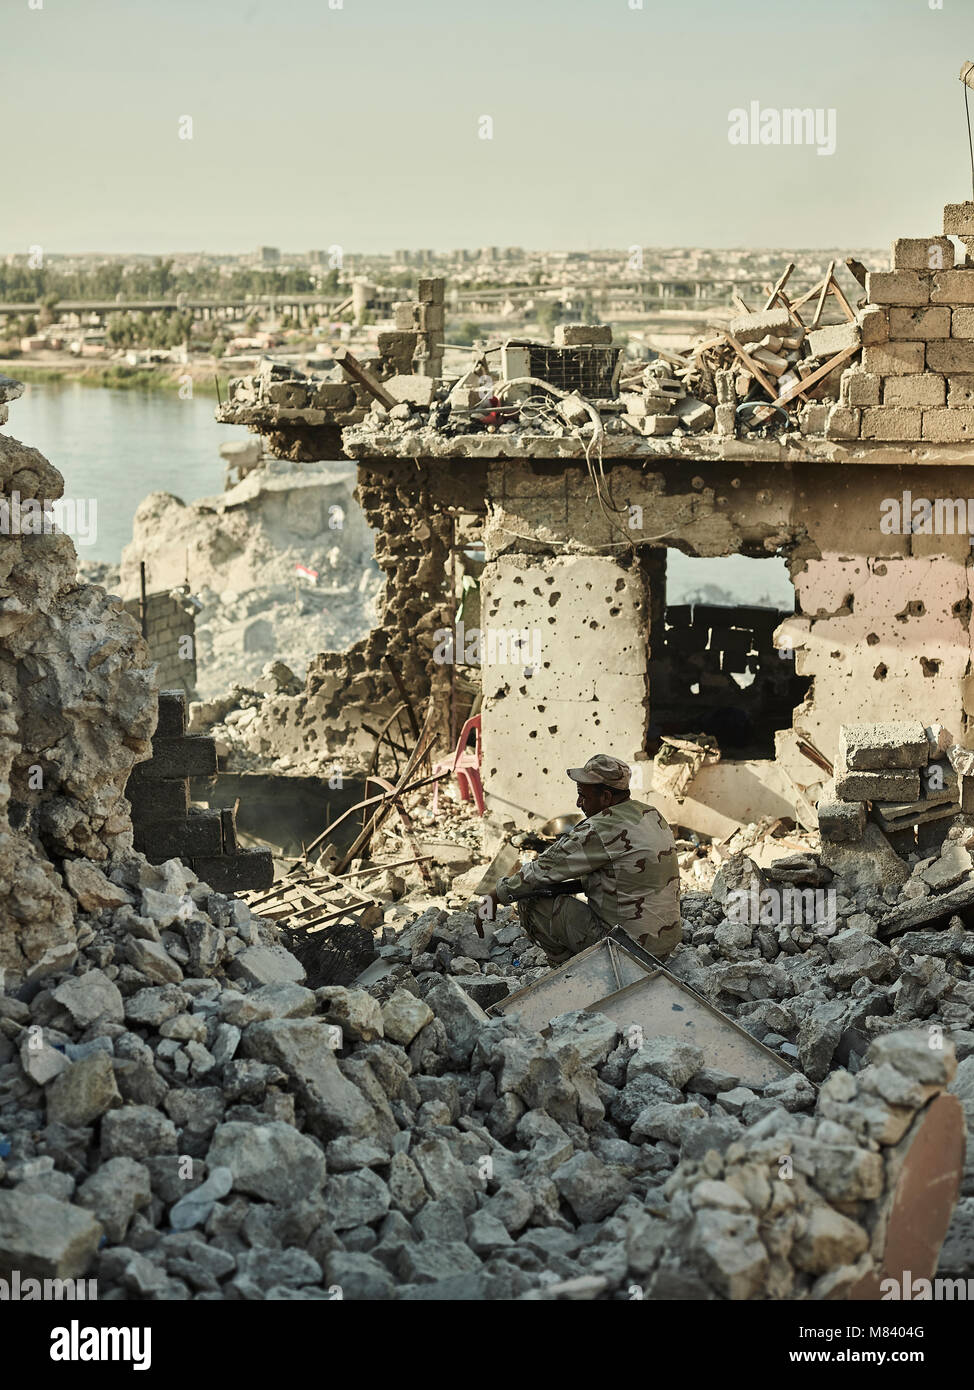 Ein irakischer Soldat sieht an an der Zerstörung entlang des Tigris. Die Stadt Mosul im Nordirak hat unter islamischen Staat militanten wurde für 3 Jahre, seit Juni 2014. Im Juli 2017 die Streitkräfte der Koalition geführt von der irakischen Armee hat endlich befreit die Stadt aus der Hand von Terroristen. Stockfoto